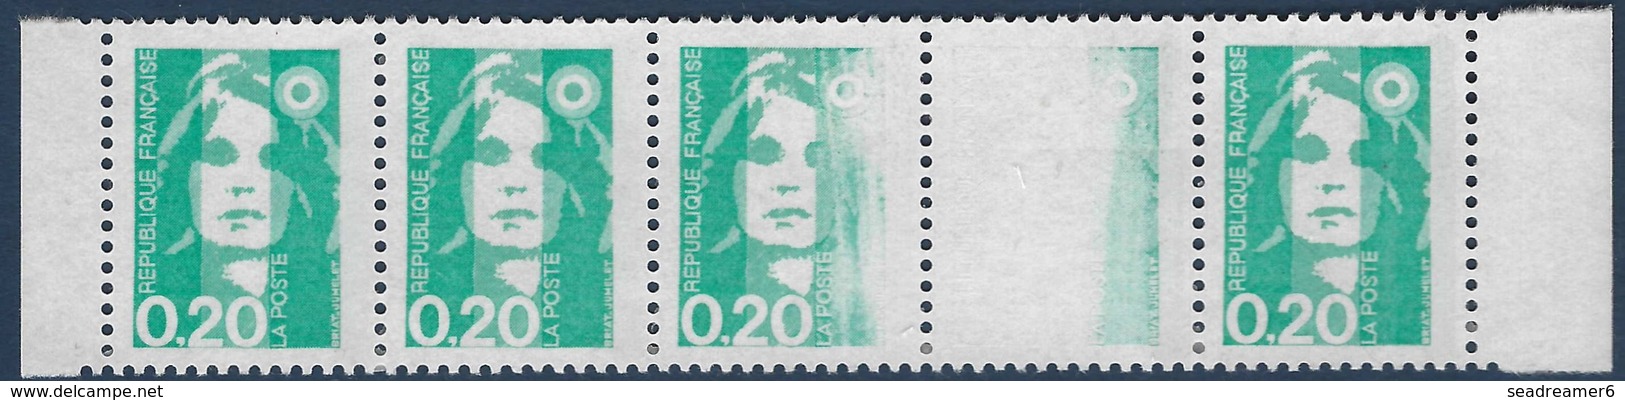 France Marianne De Briat N°2618 Effacement Partiel Tenant à Normal Dans Bande 5 RRR Signé Calves - Unused Stamps